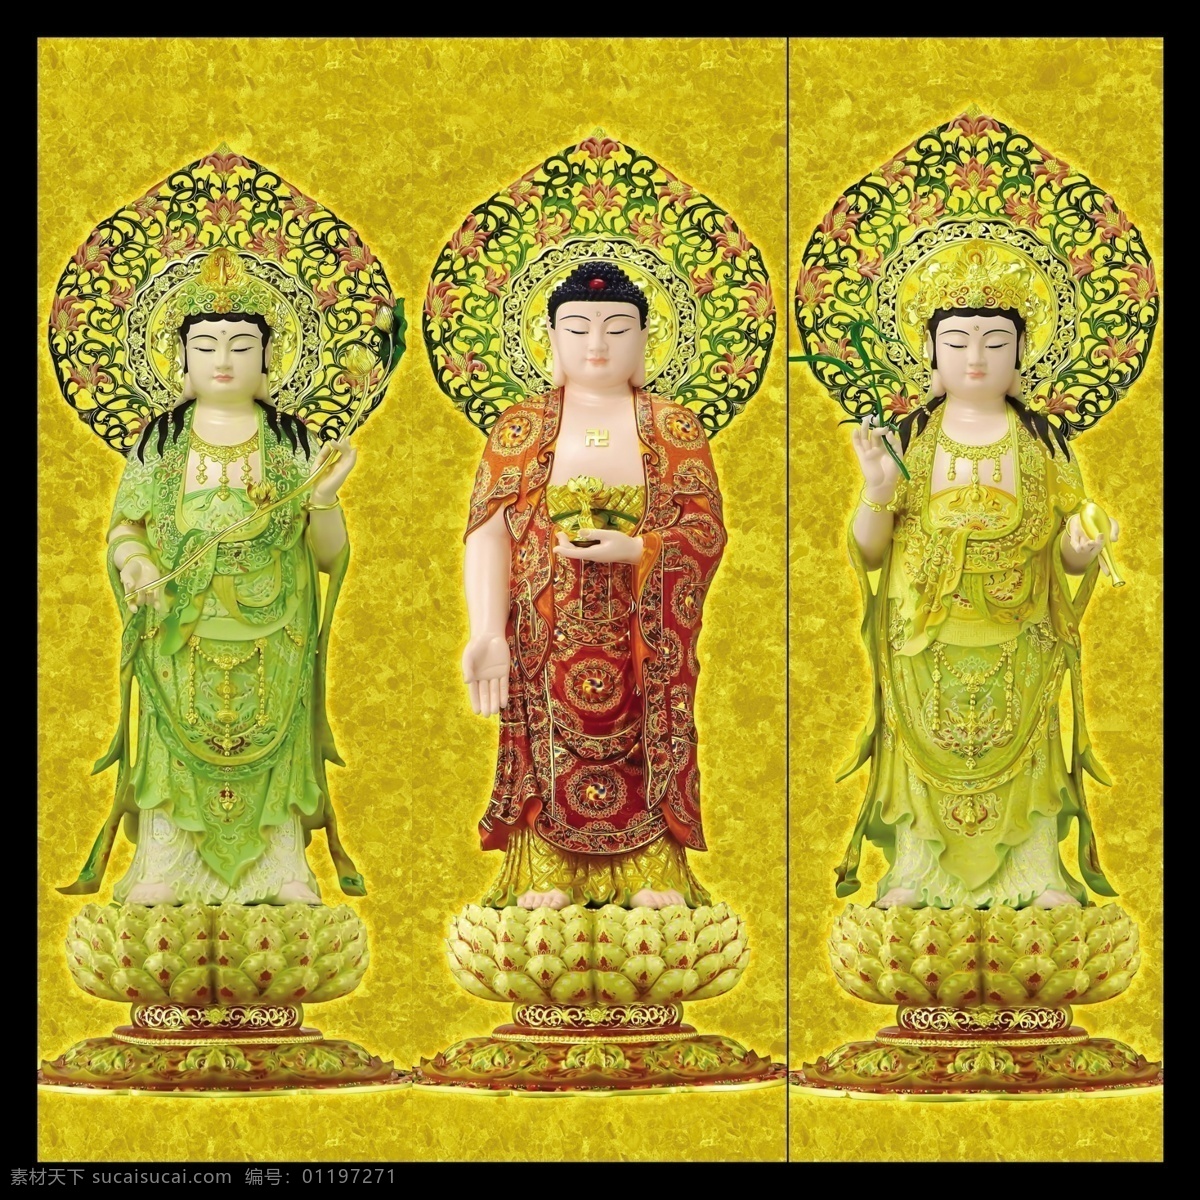 西方三圣 菩萨 佛像 文化 画 佛教 文化艺术 传统文化